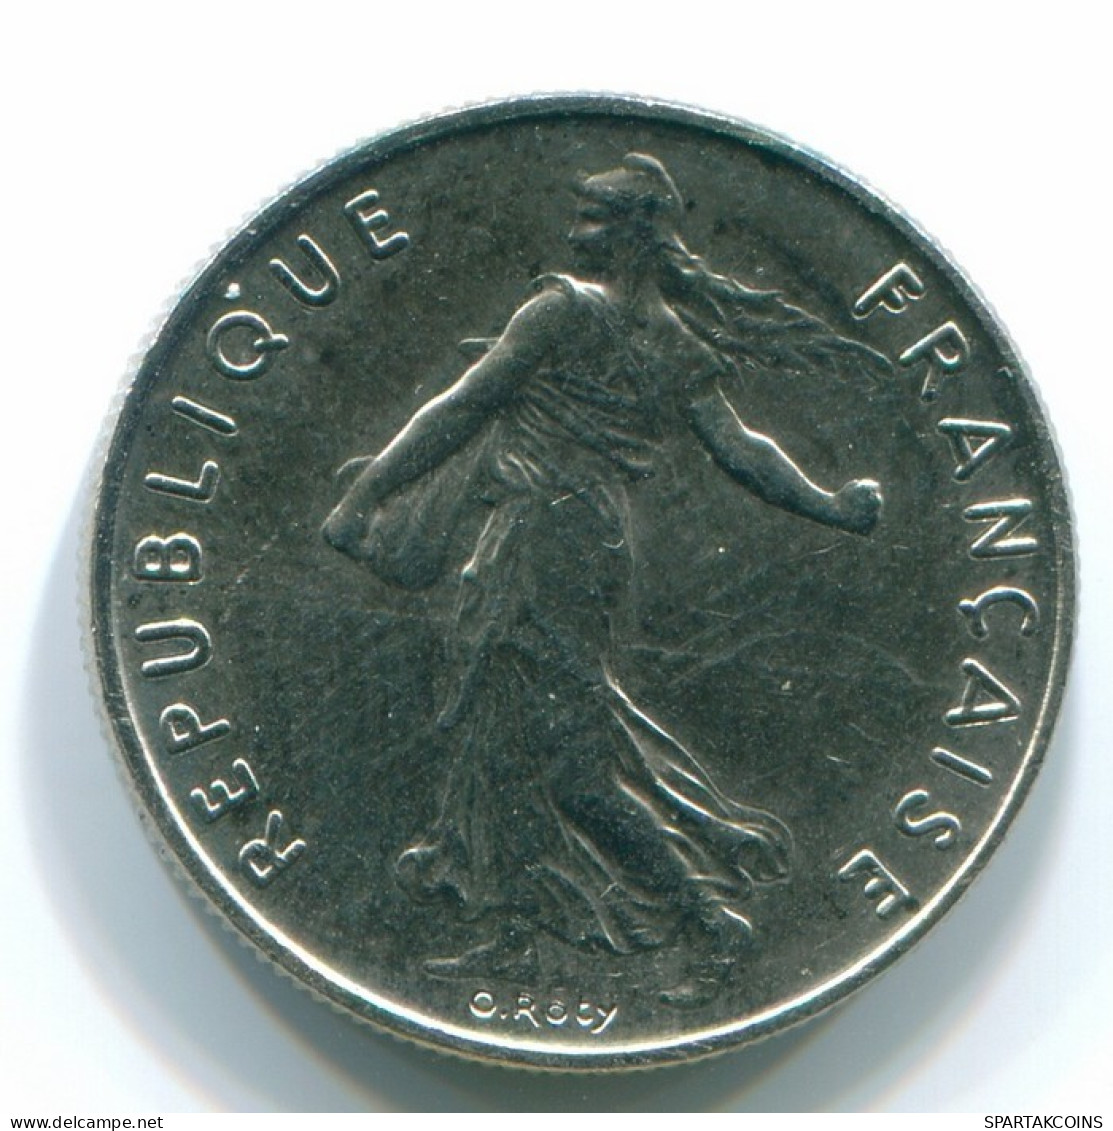 1/2 FRANC 1984 FRANCE Coin BU #FR1229.5.U.A - 1/2 Franc